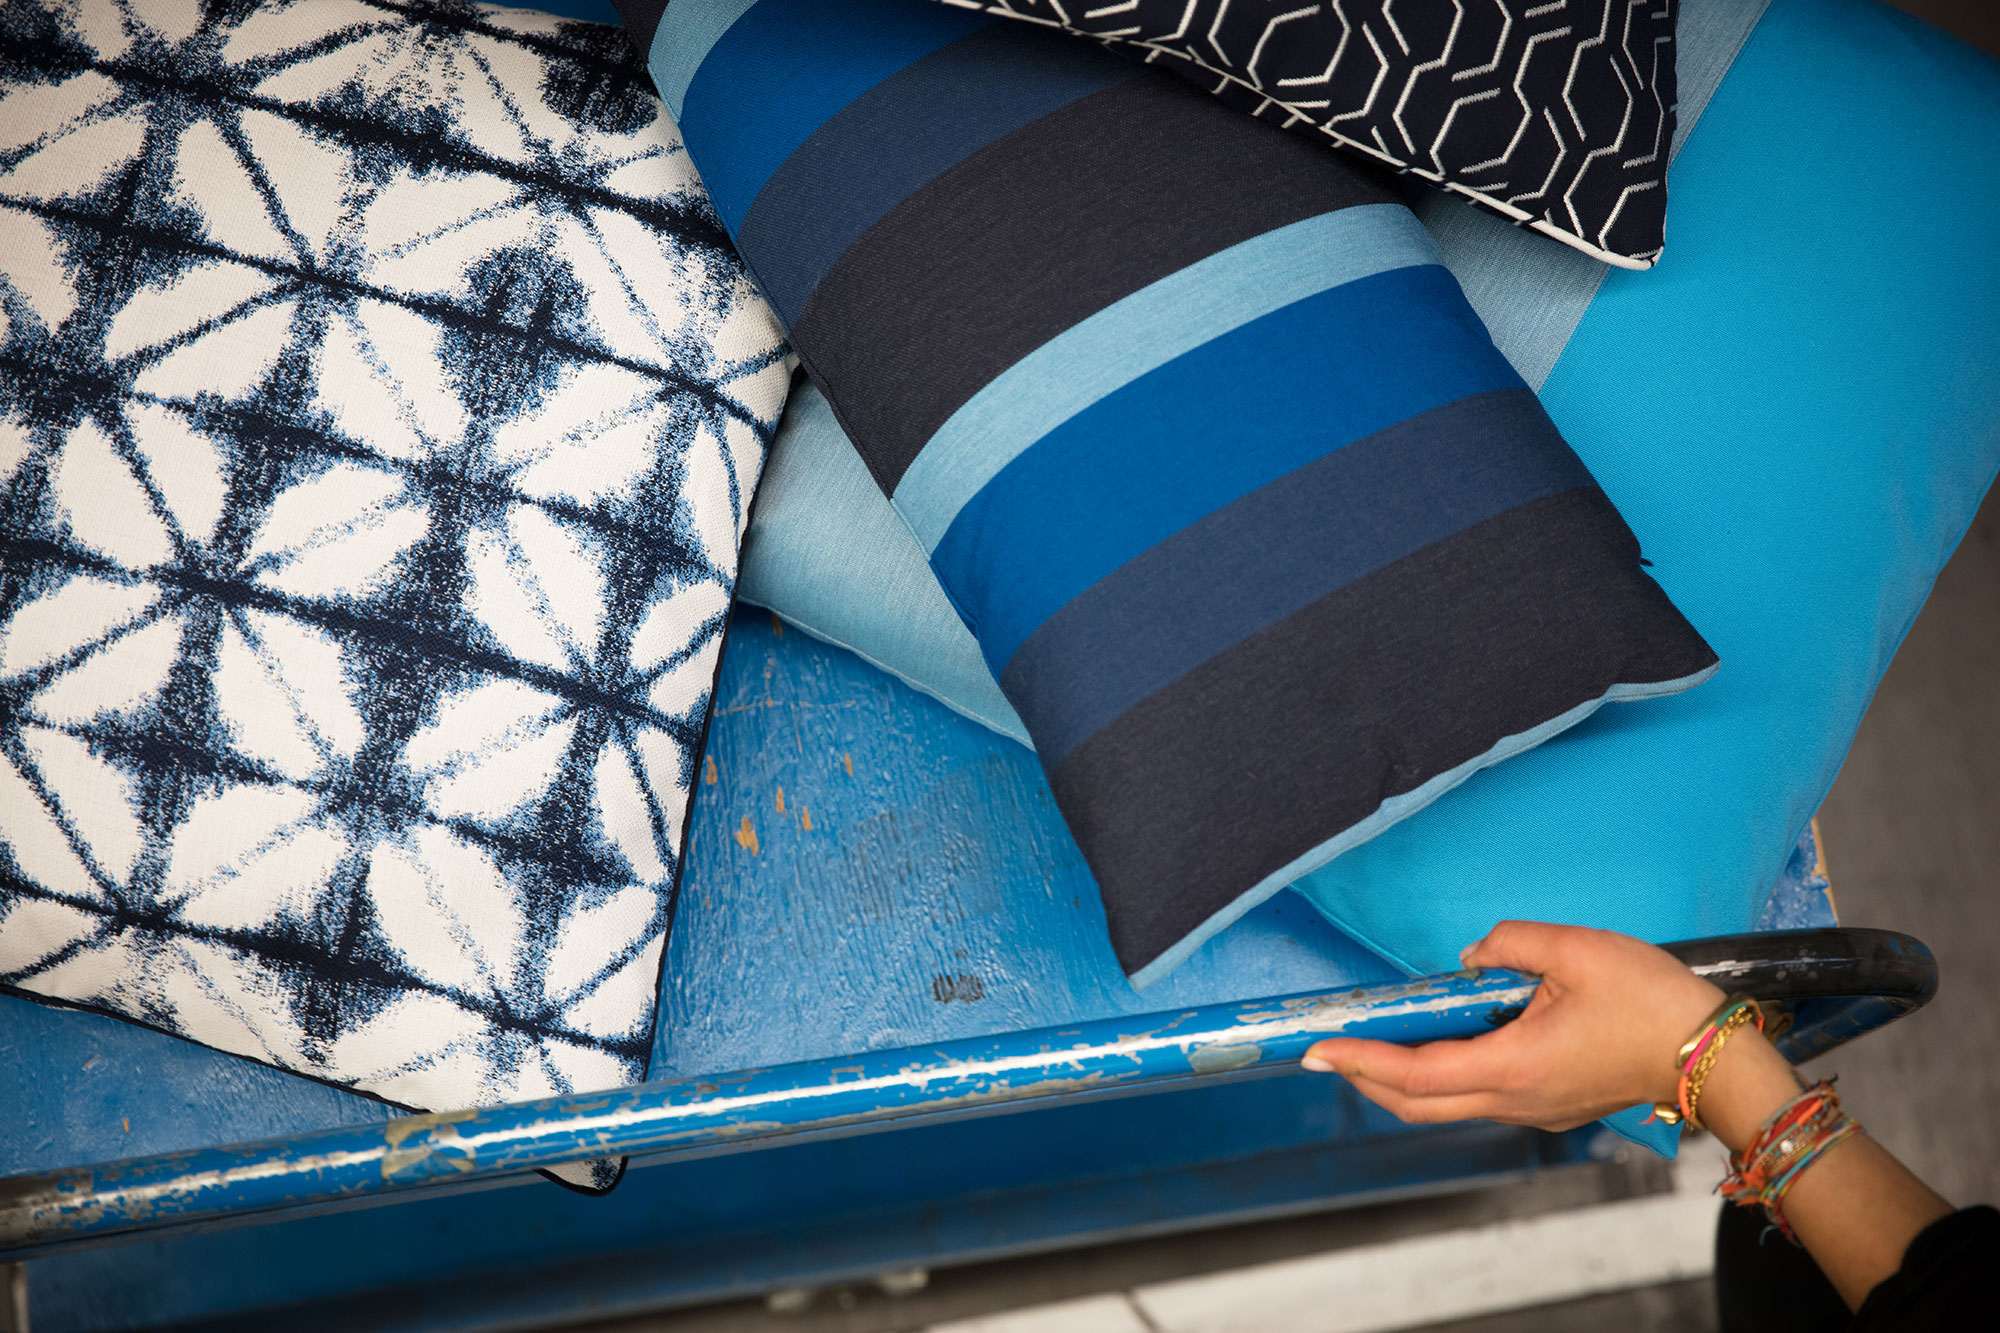 Almofadas azuis feitas de tecido da coleção de tecidos para estofados Sunbrella Makers.